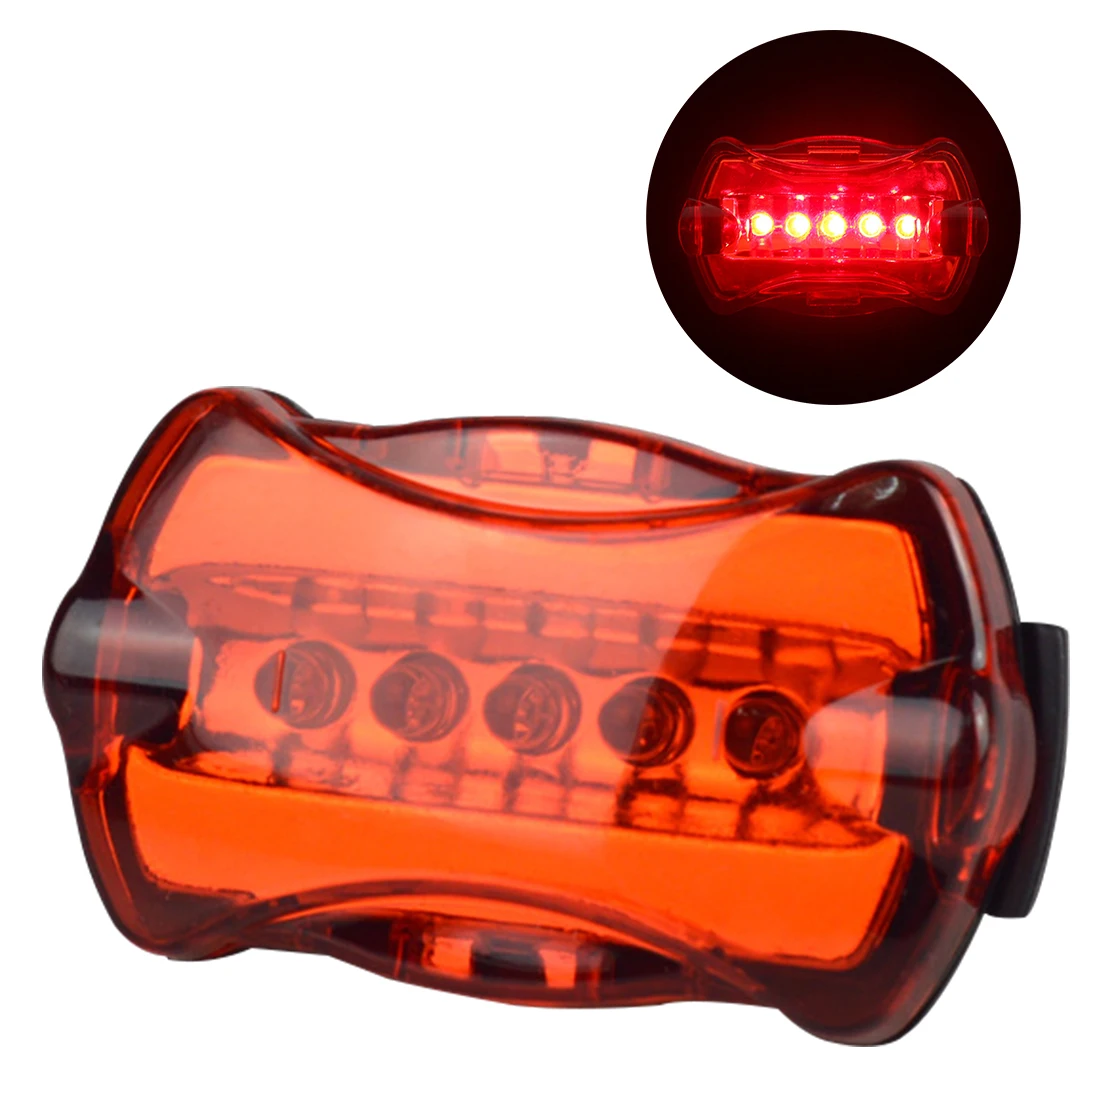 Ультра яркий 5 светодиодный велосипедный задний светильник для велосипеда, светильник-вспышка, s лампа, велосипедный предупреждающий световой сигнал, аксессуары